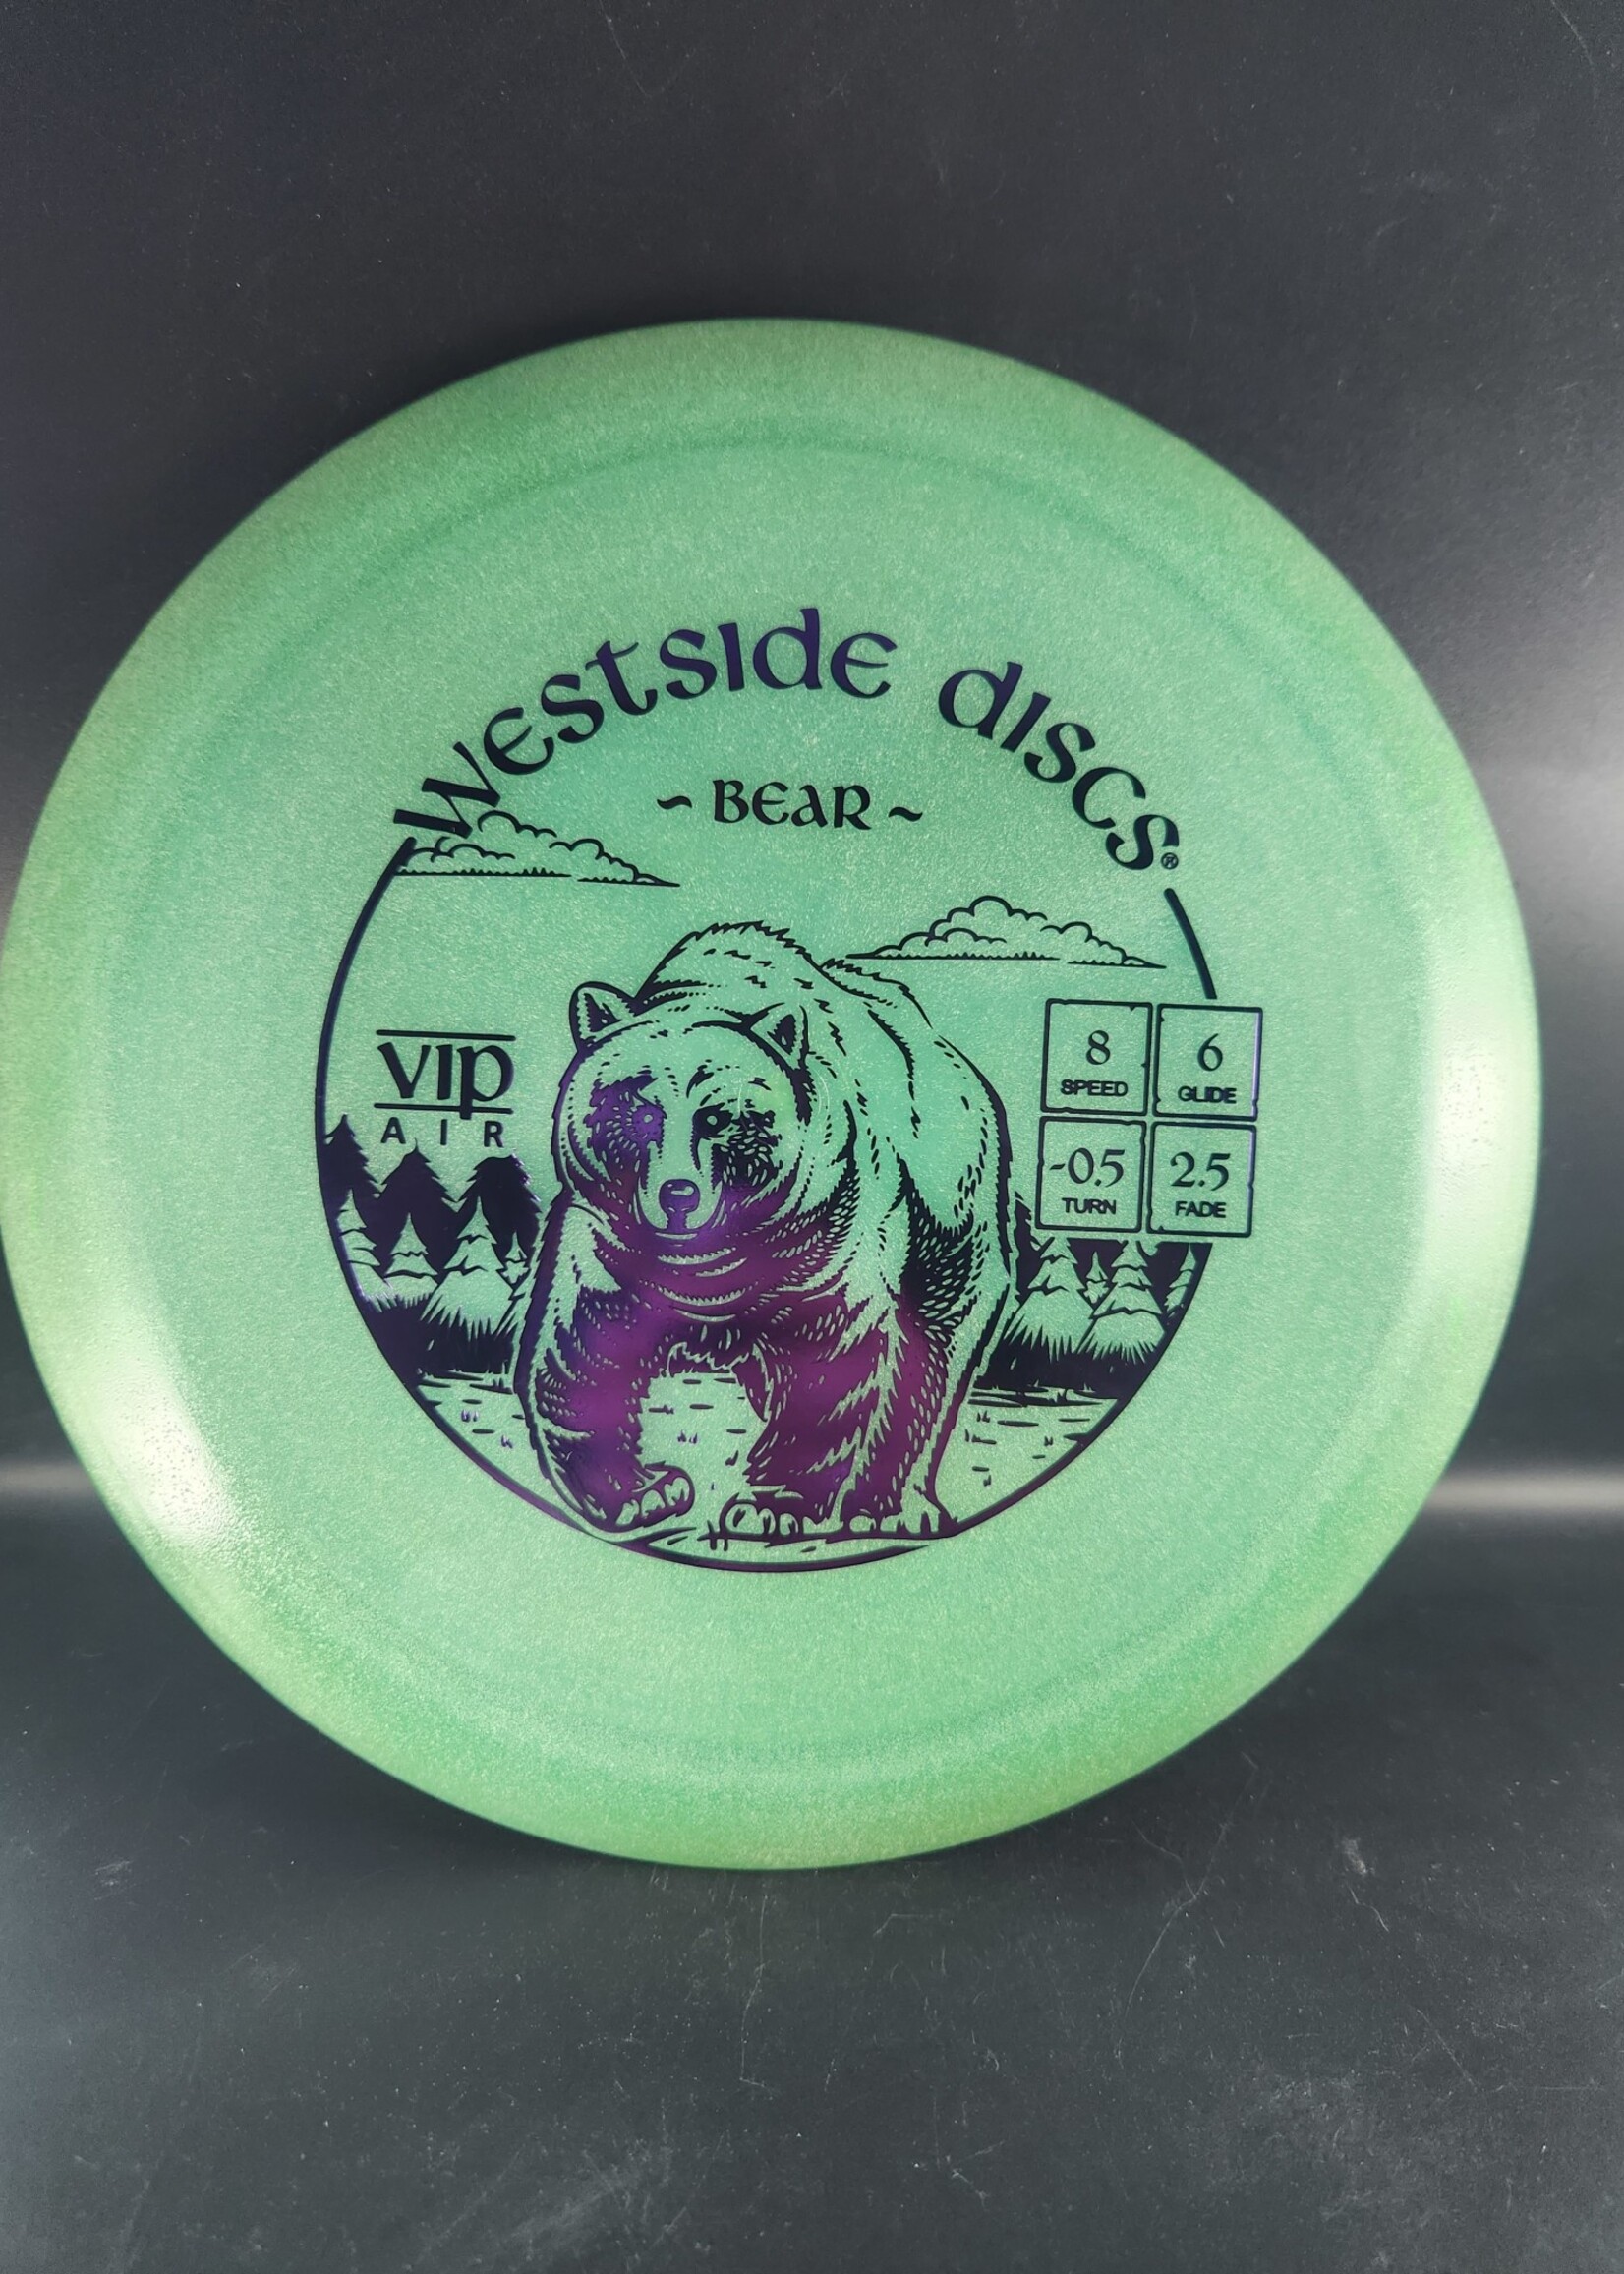 Westside Disc Westside VIP AIR Bear